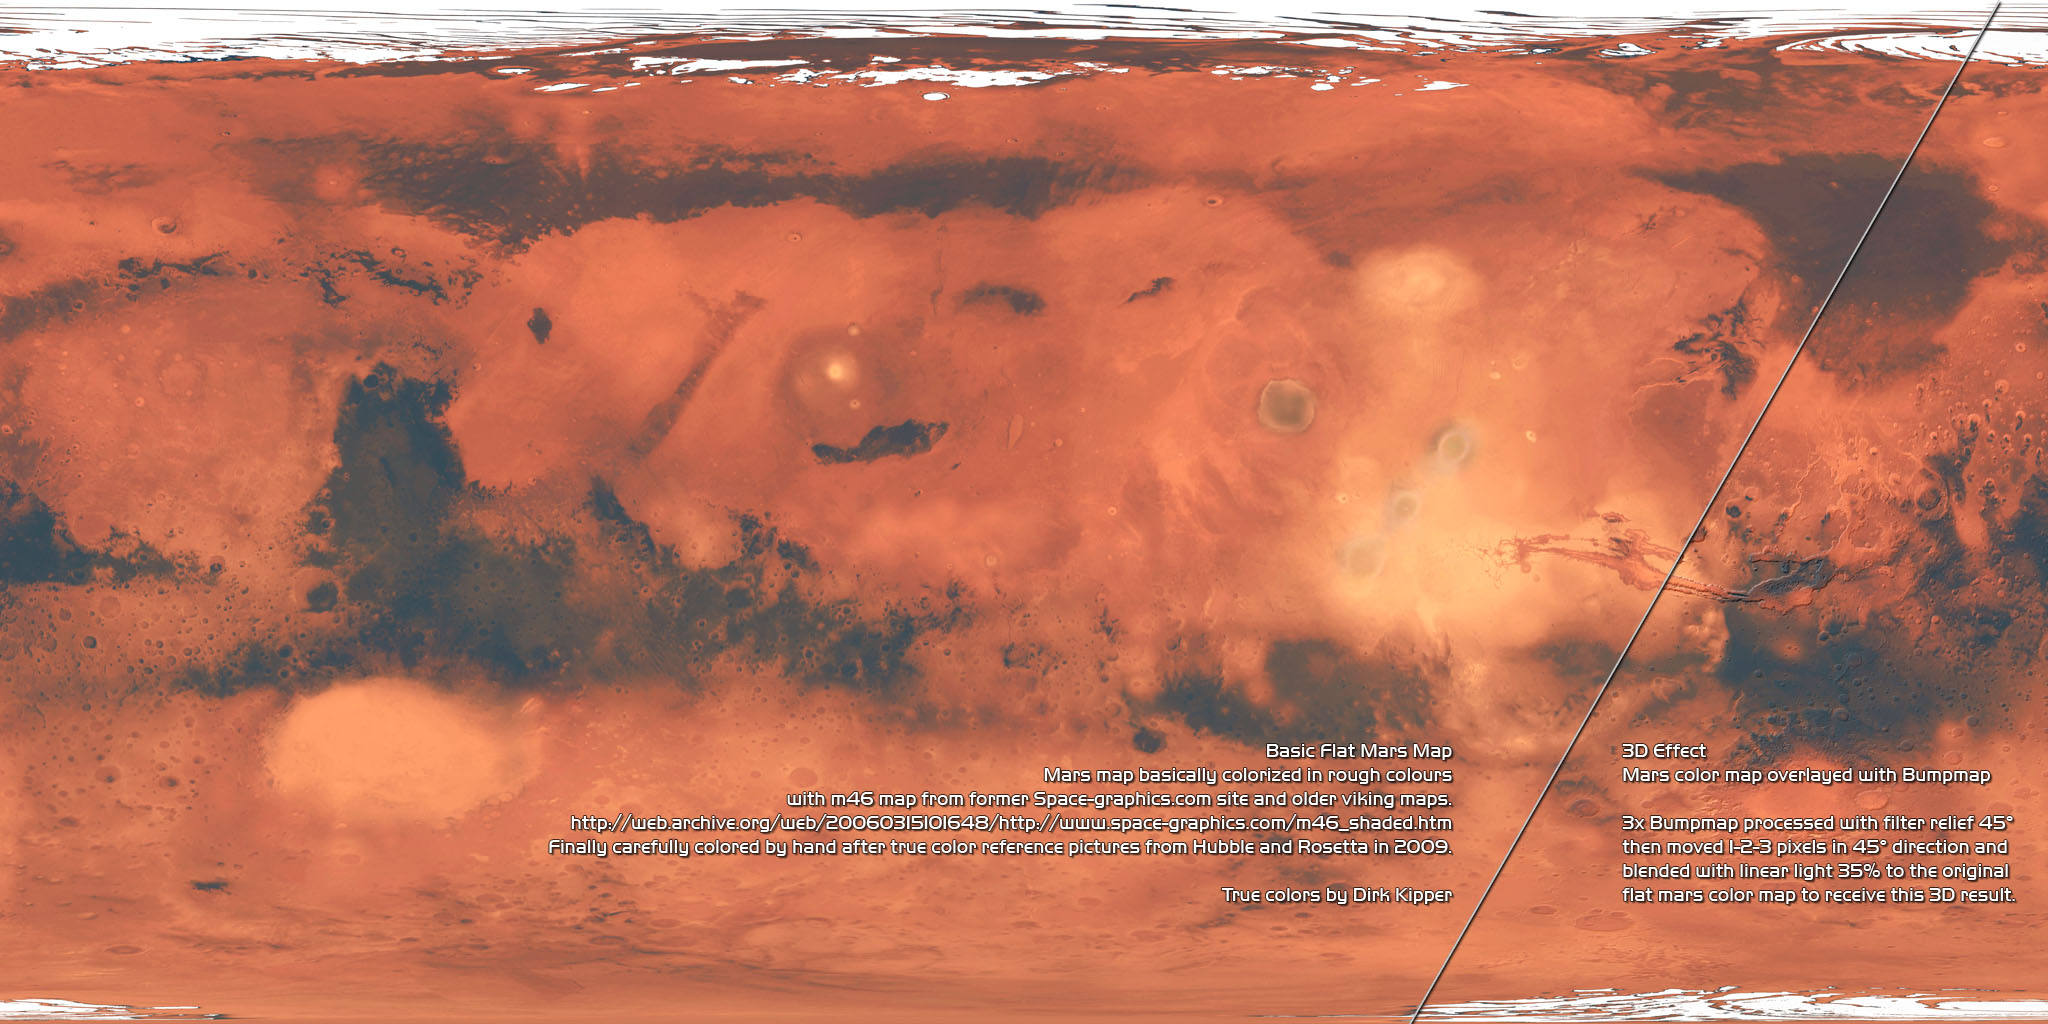 True color mars map by Dirk Kipper.jpg